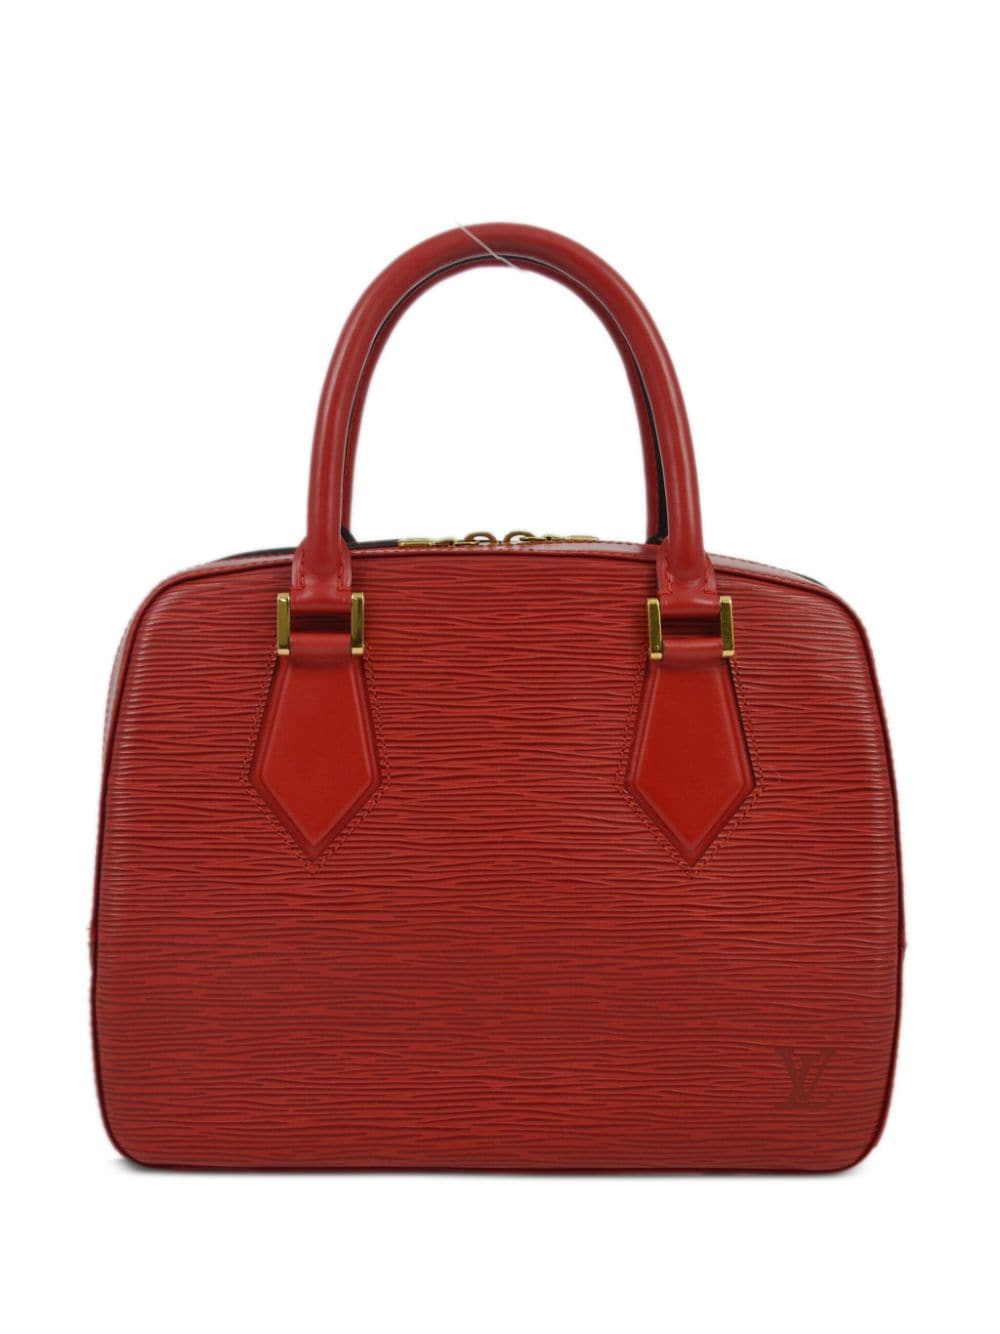 Louis Vuitton Pre-Owned 1998 Sablon handbag - Red von Louis Vuitton Pre-Owned